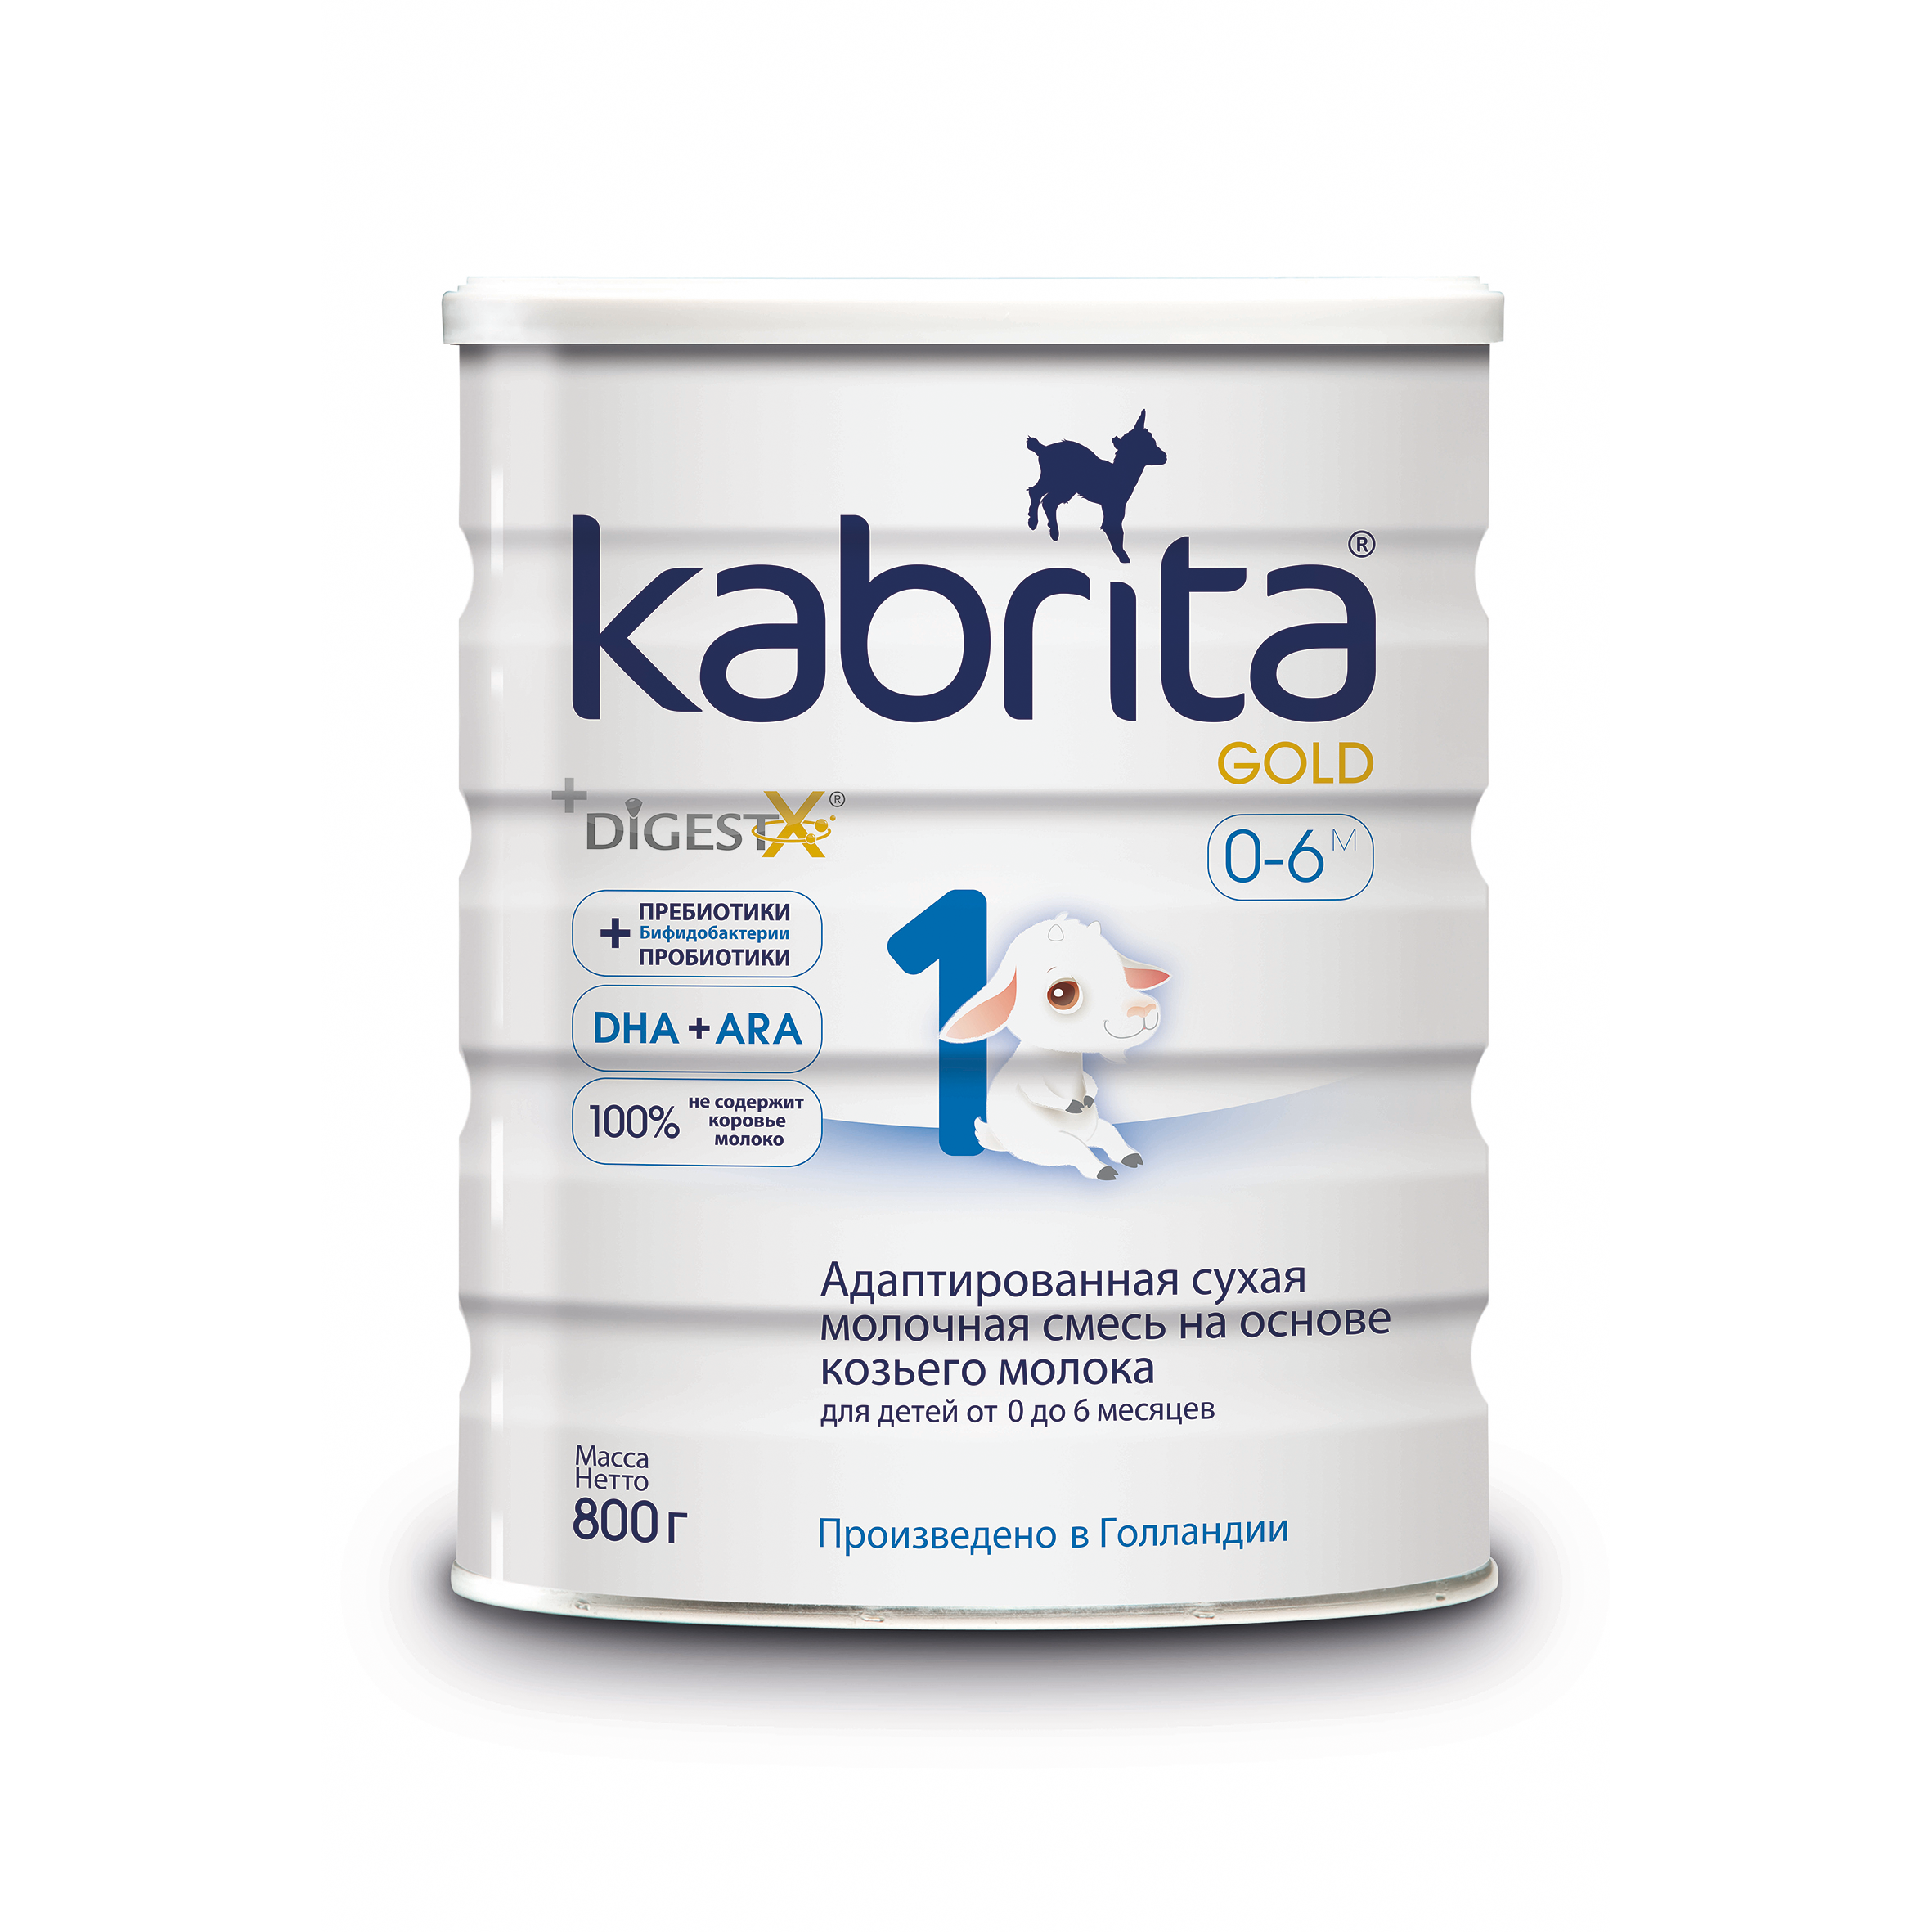 Смесь на основе козьего молока Kabrita Gold от 0 до 6 мес. 800 г адаптированная смесь kabrita 2 gold на основе козьего молока 2х800гр